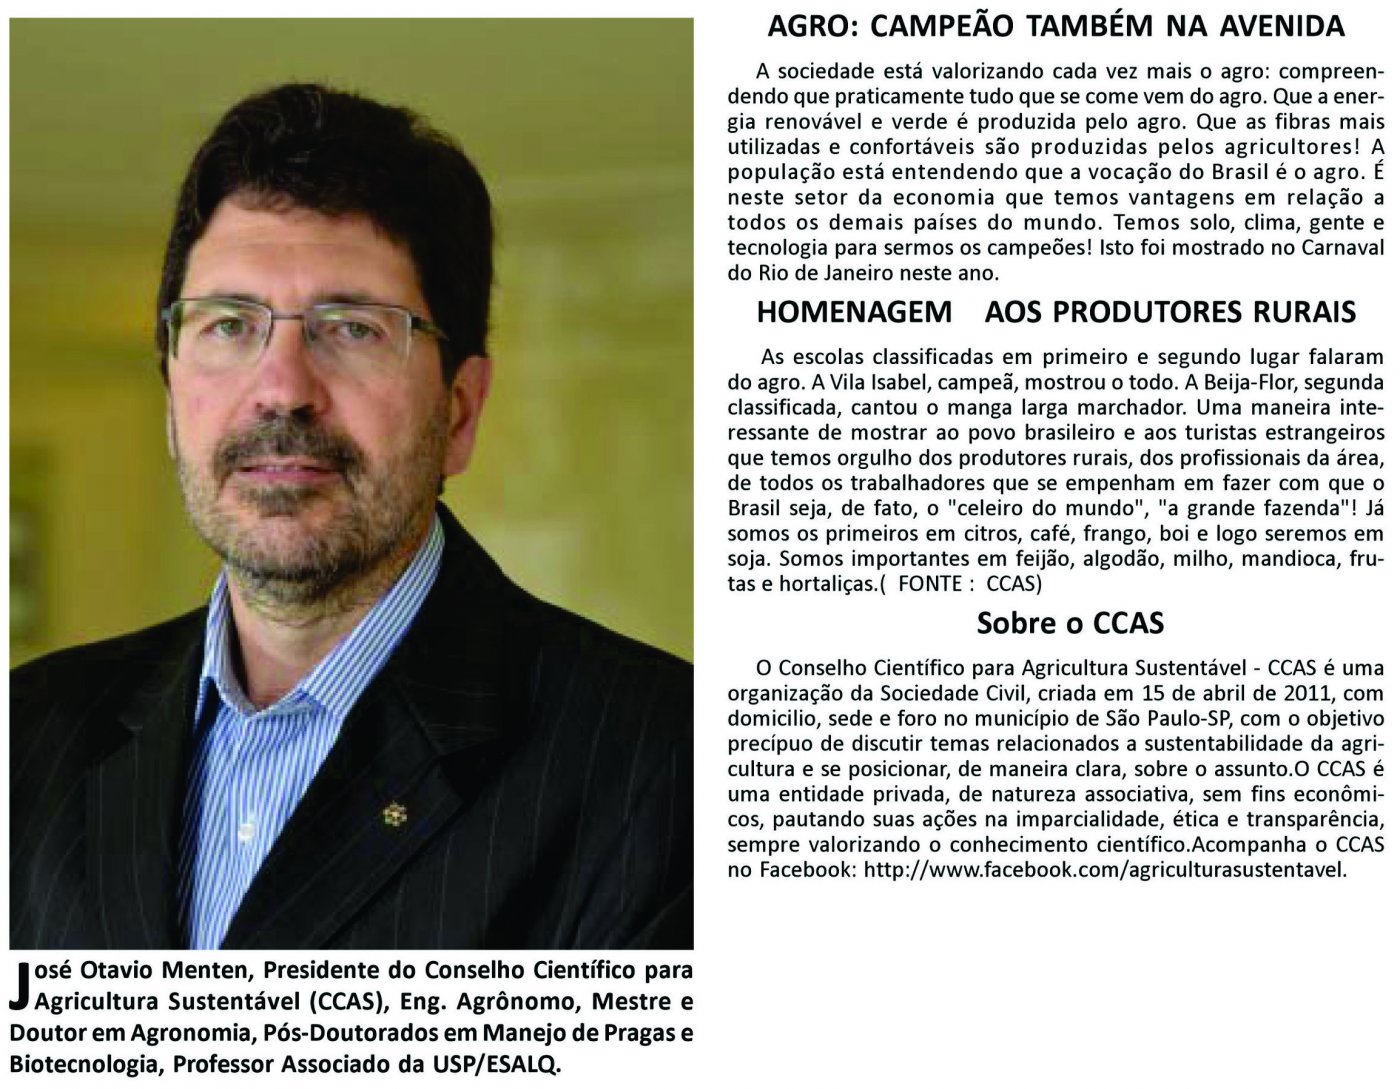 Jornal de Notícias de Montes Claros (MG) reproduz comentário do presidente do CCAS